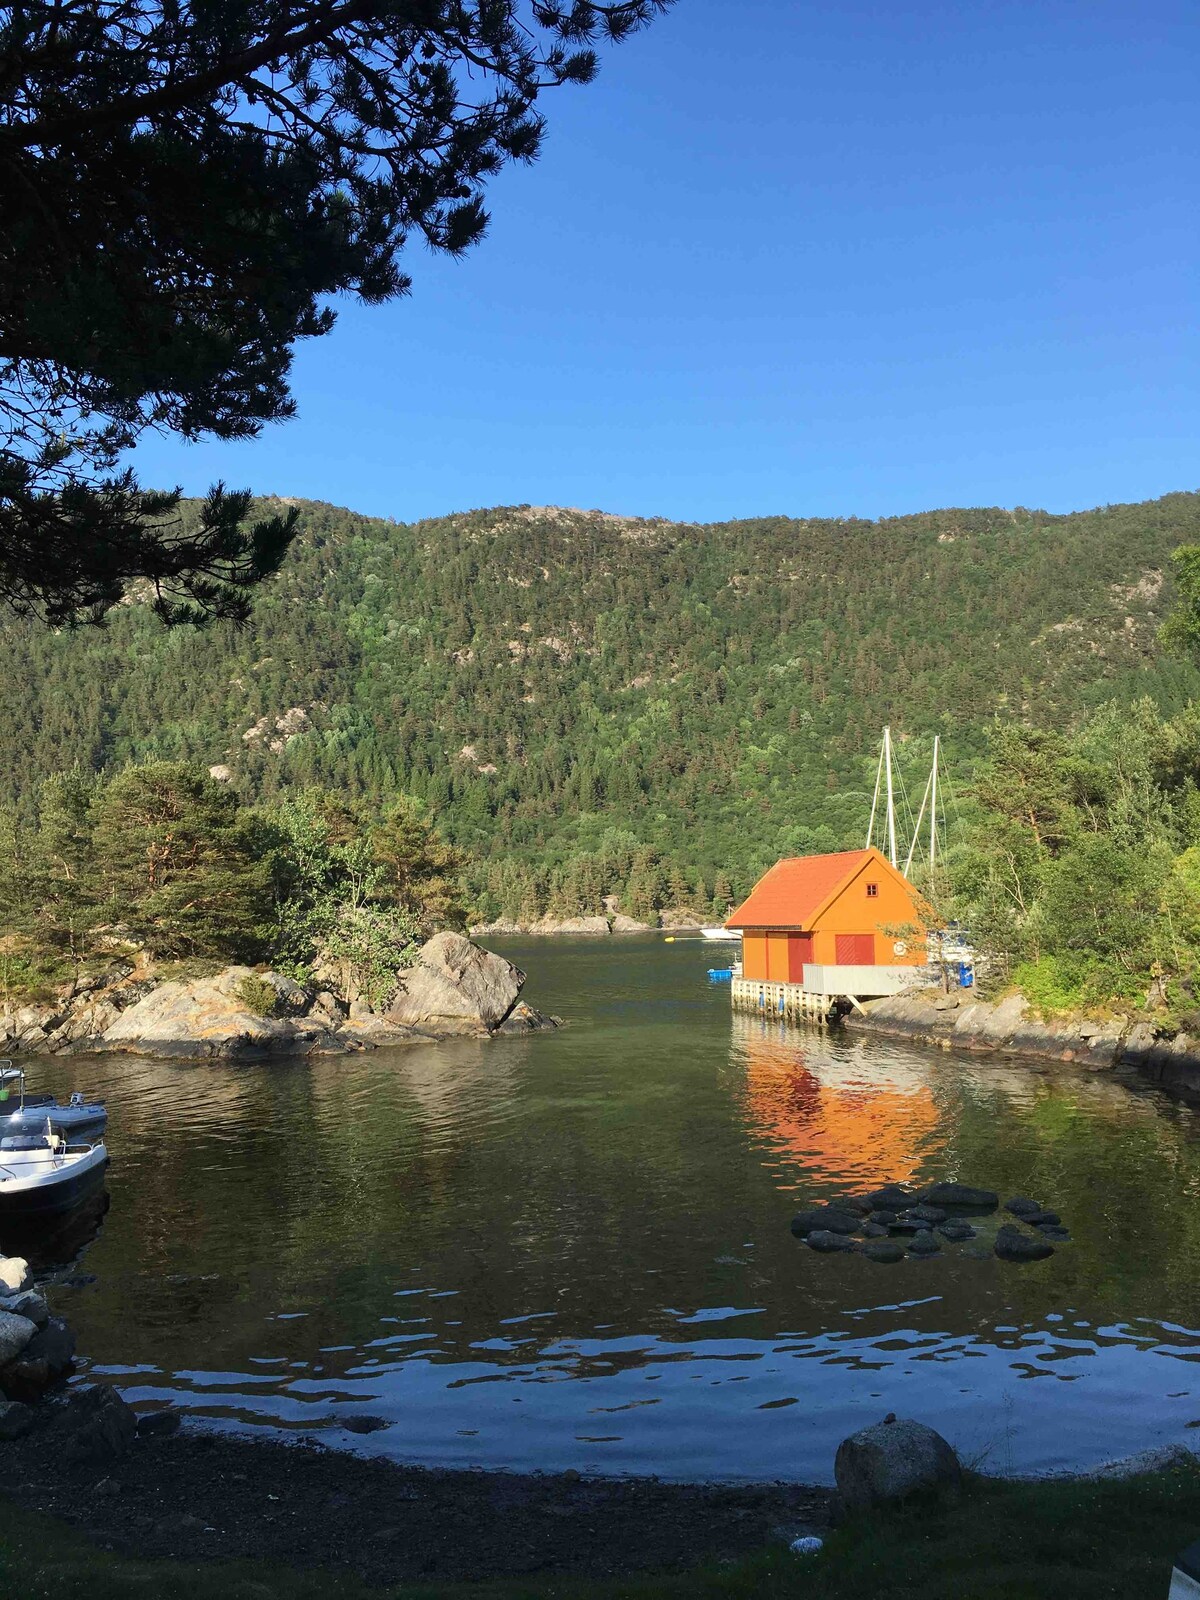 Nydelig hytte ved sjøen i naturskjønne omgivelser